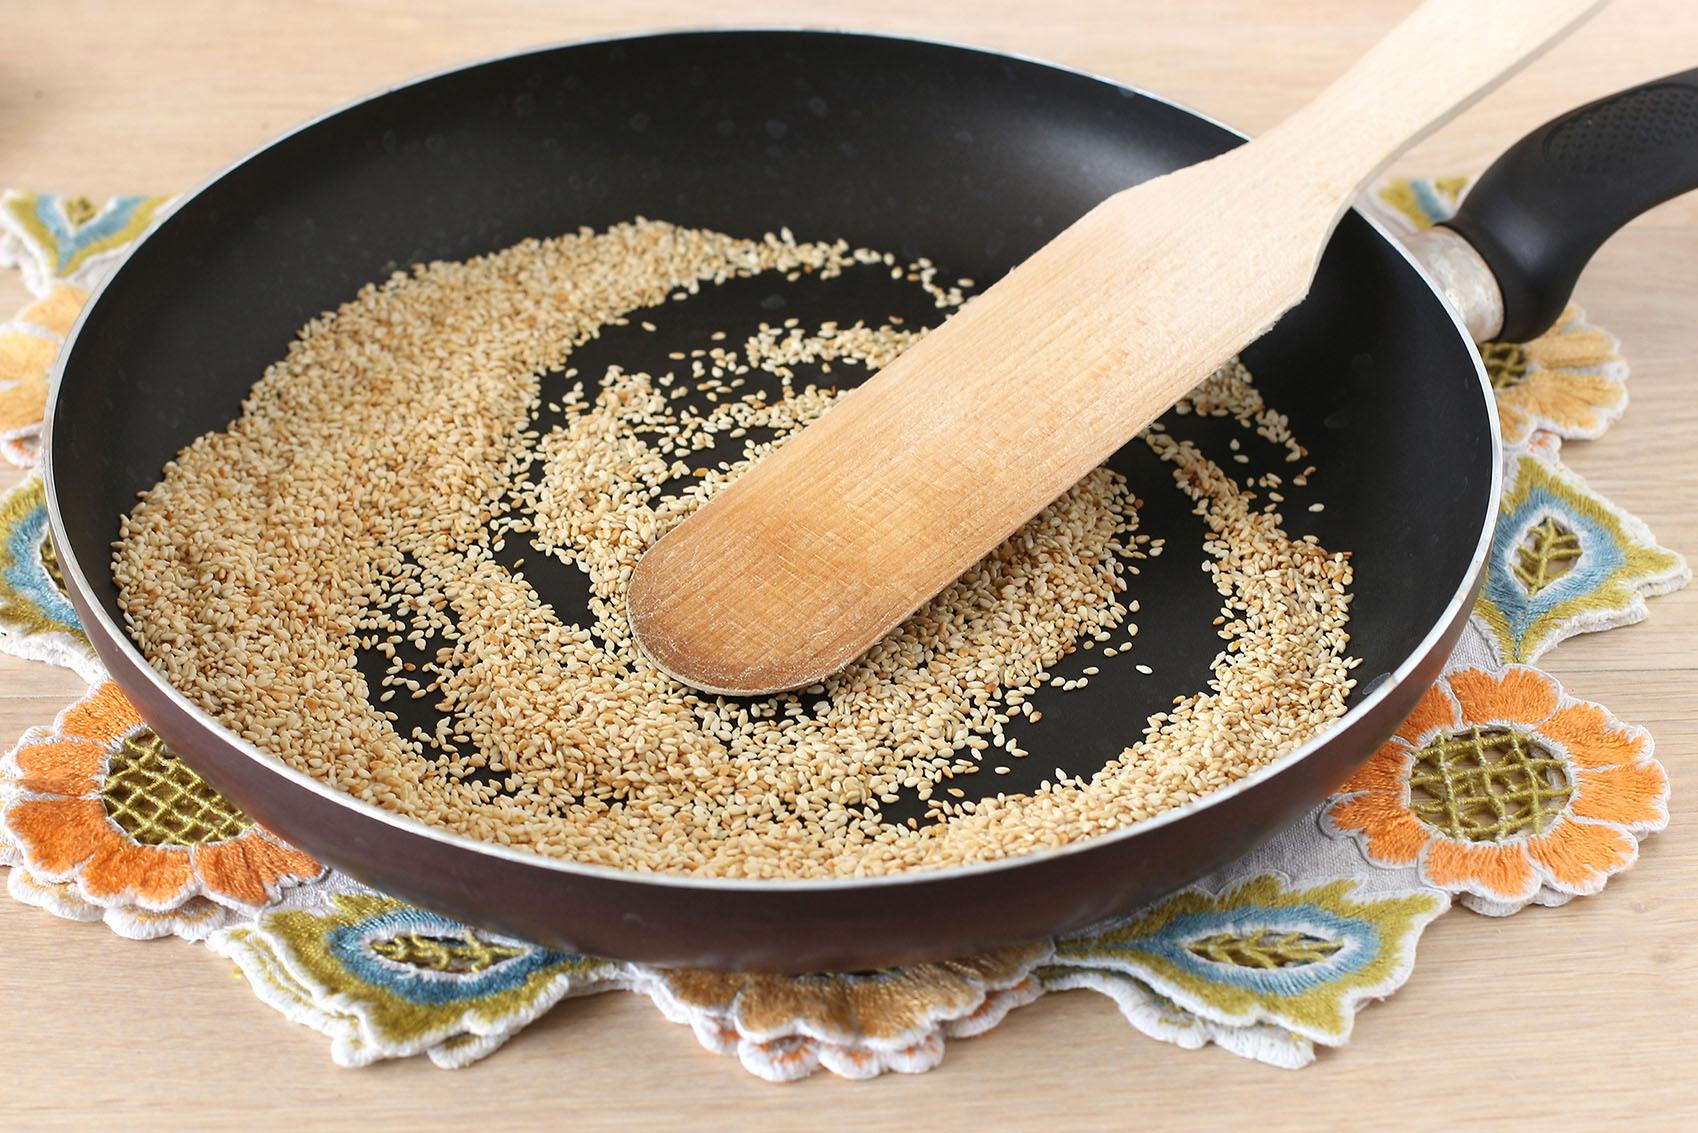 На сухую сковороду насыпьте кунжут и семена зиры. Слегка поджарьте их на маленьком огне до легкого золотистого оттенка. Важно не пережарить кунжут, иначе он может начать горчить.